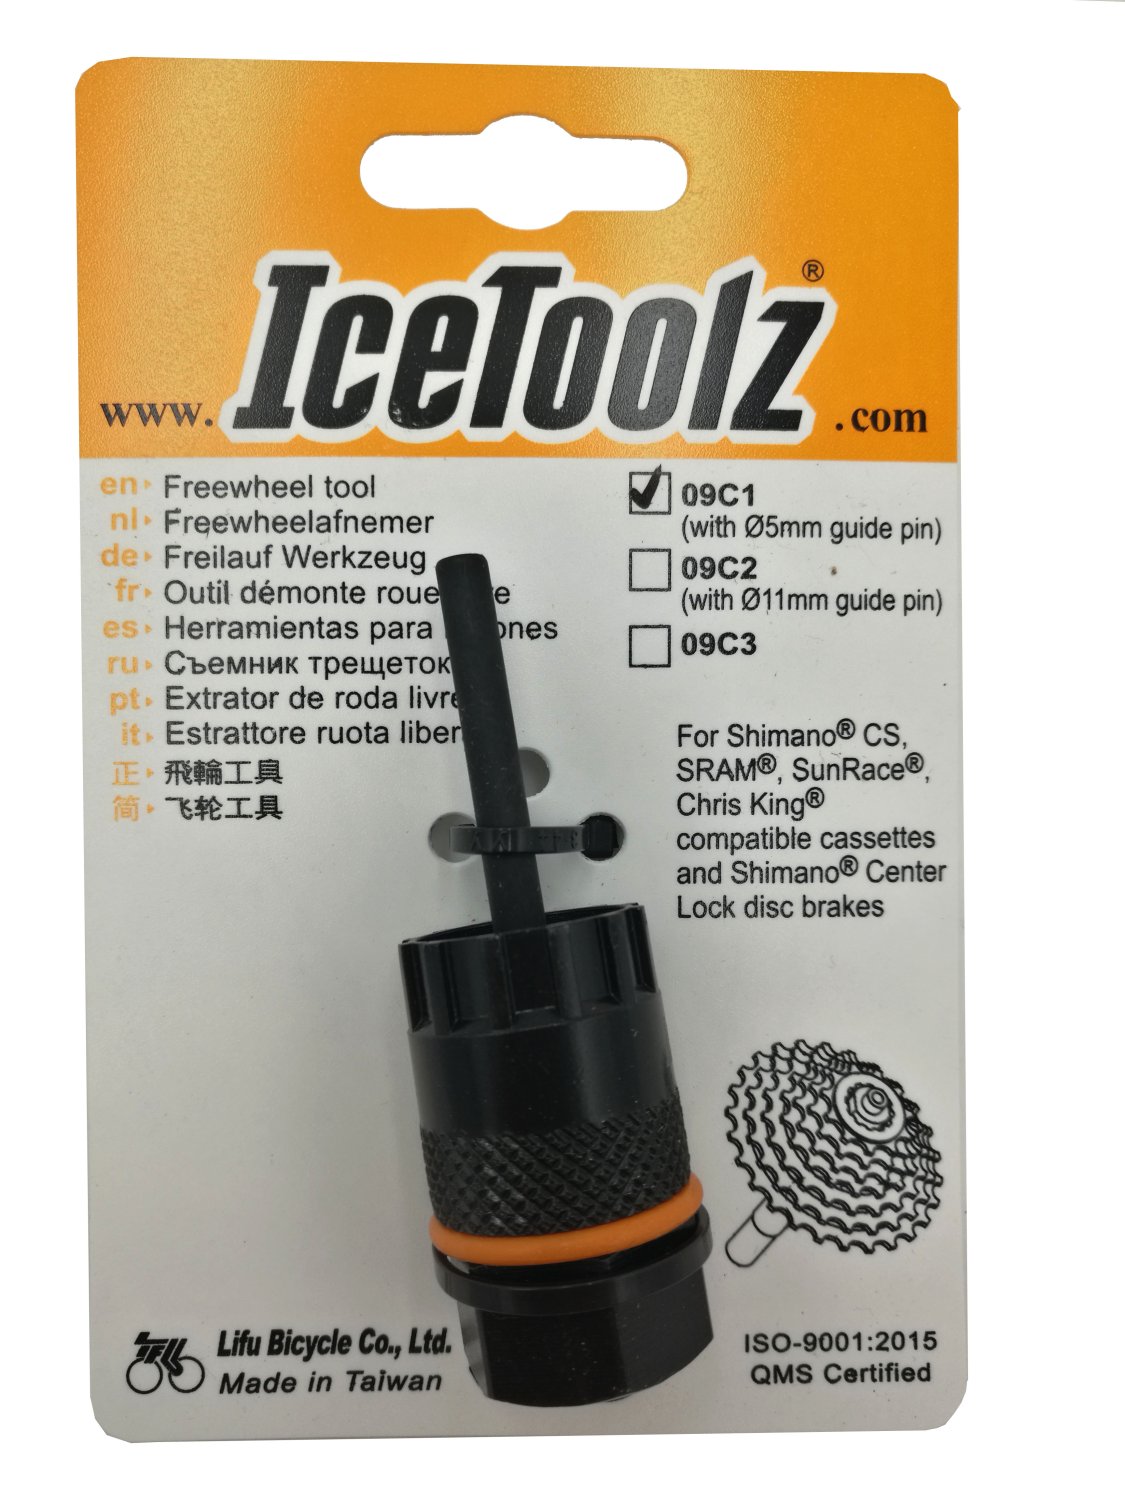 Съемник для кассет ICE TOOLZ Shimano CS/Center Lock, с направляющей , Сr-V сталь, 09C1 ключ спицевой ice toolz для систем shimano 12g4